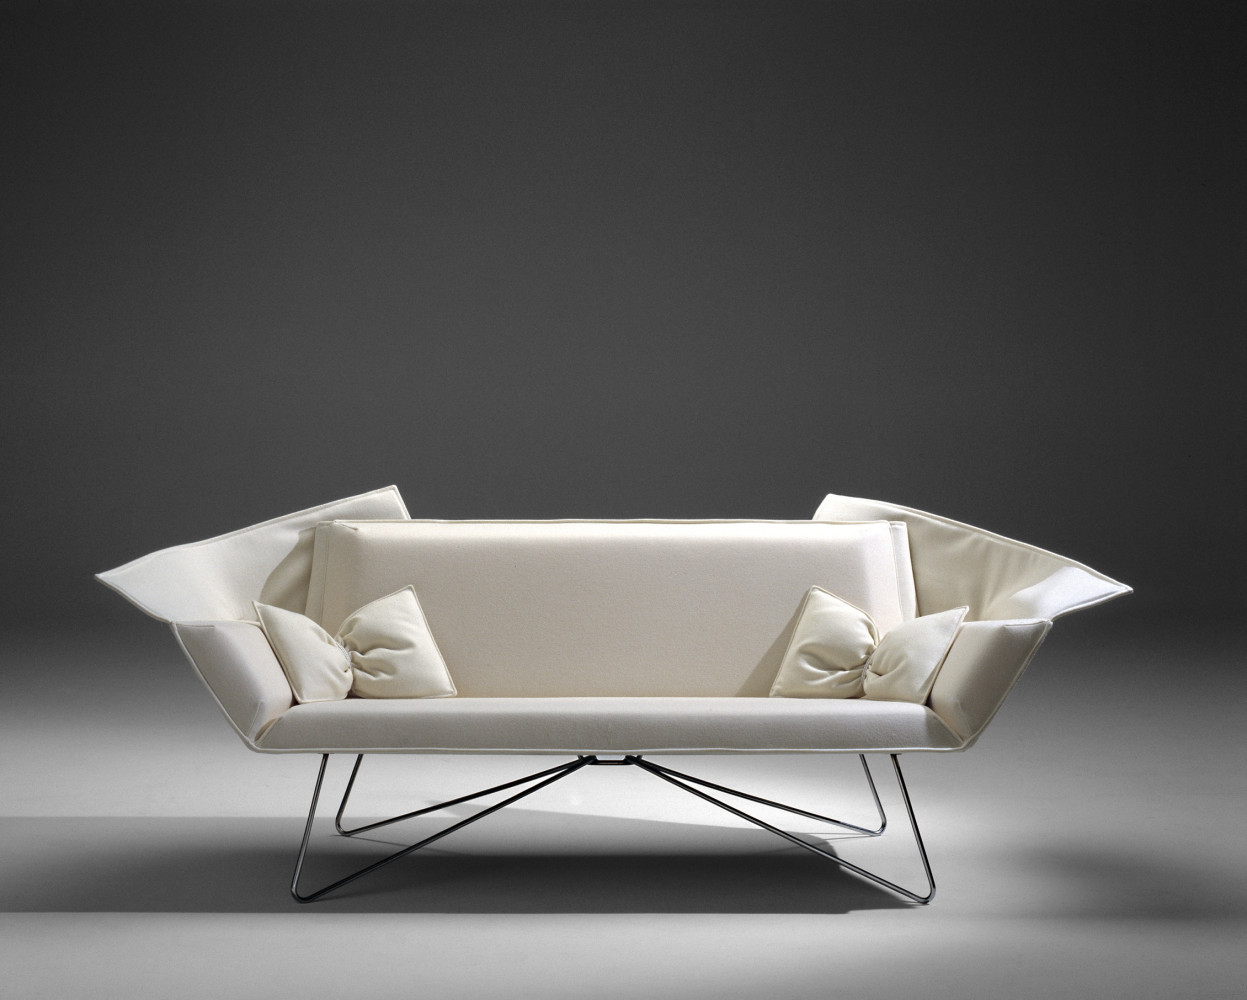 sculptural sofa resembles folded origami